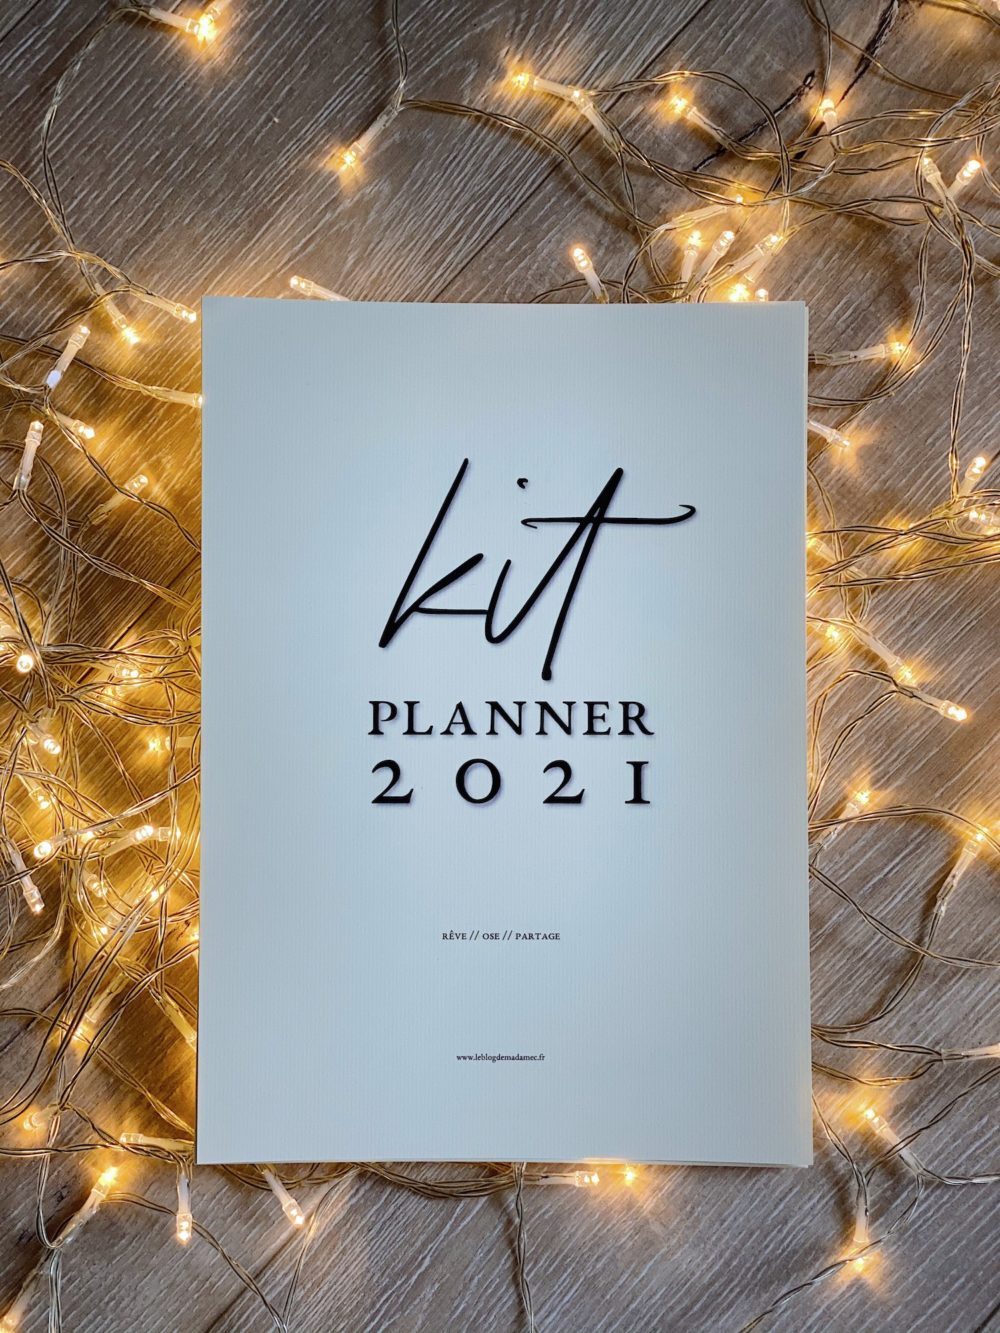 Kit planner 2021 - Blog Mariage Madame C